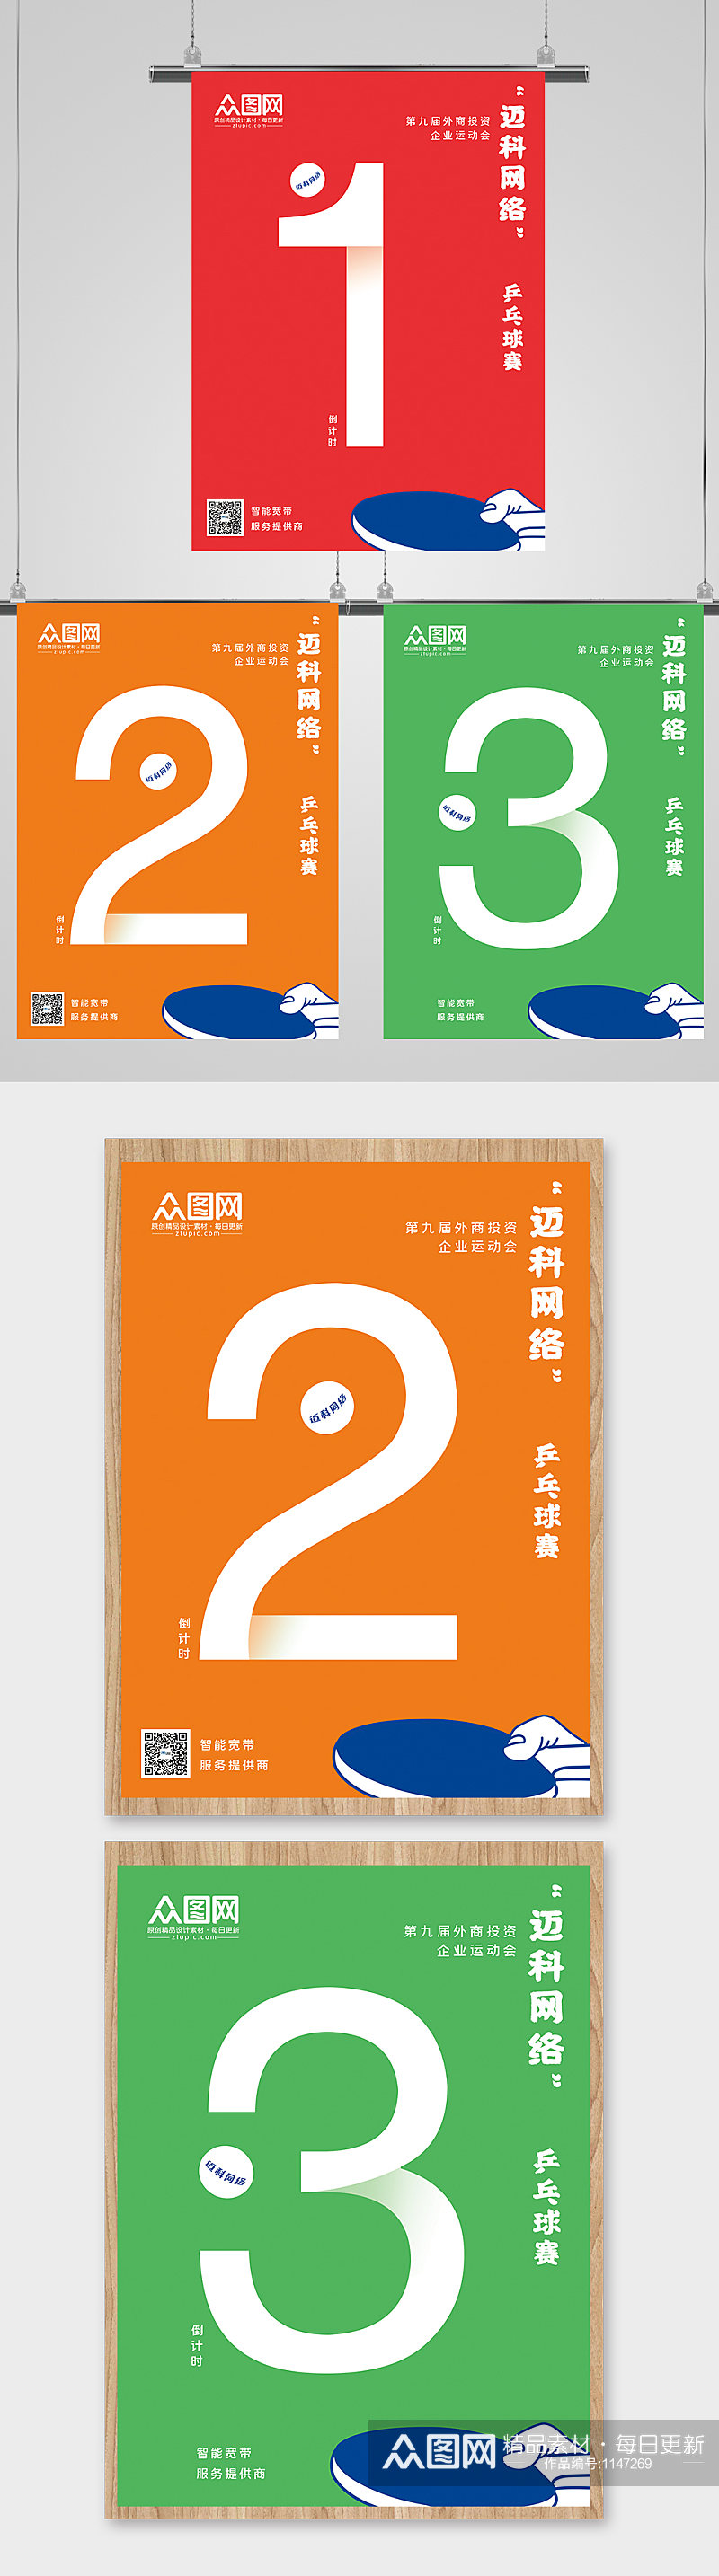 原创炫酷数字系列乒乓球体育运动倒计时海报素材